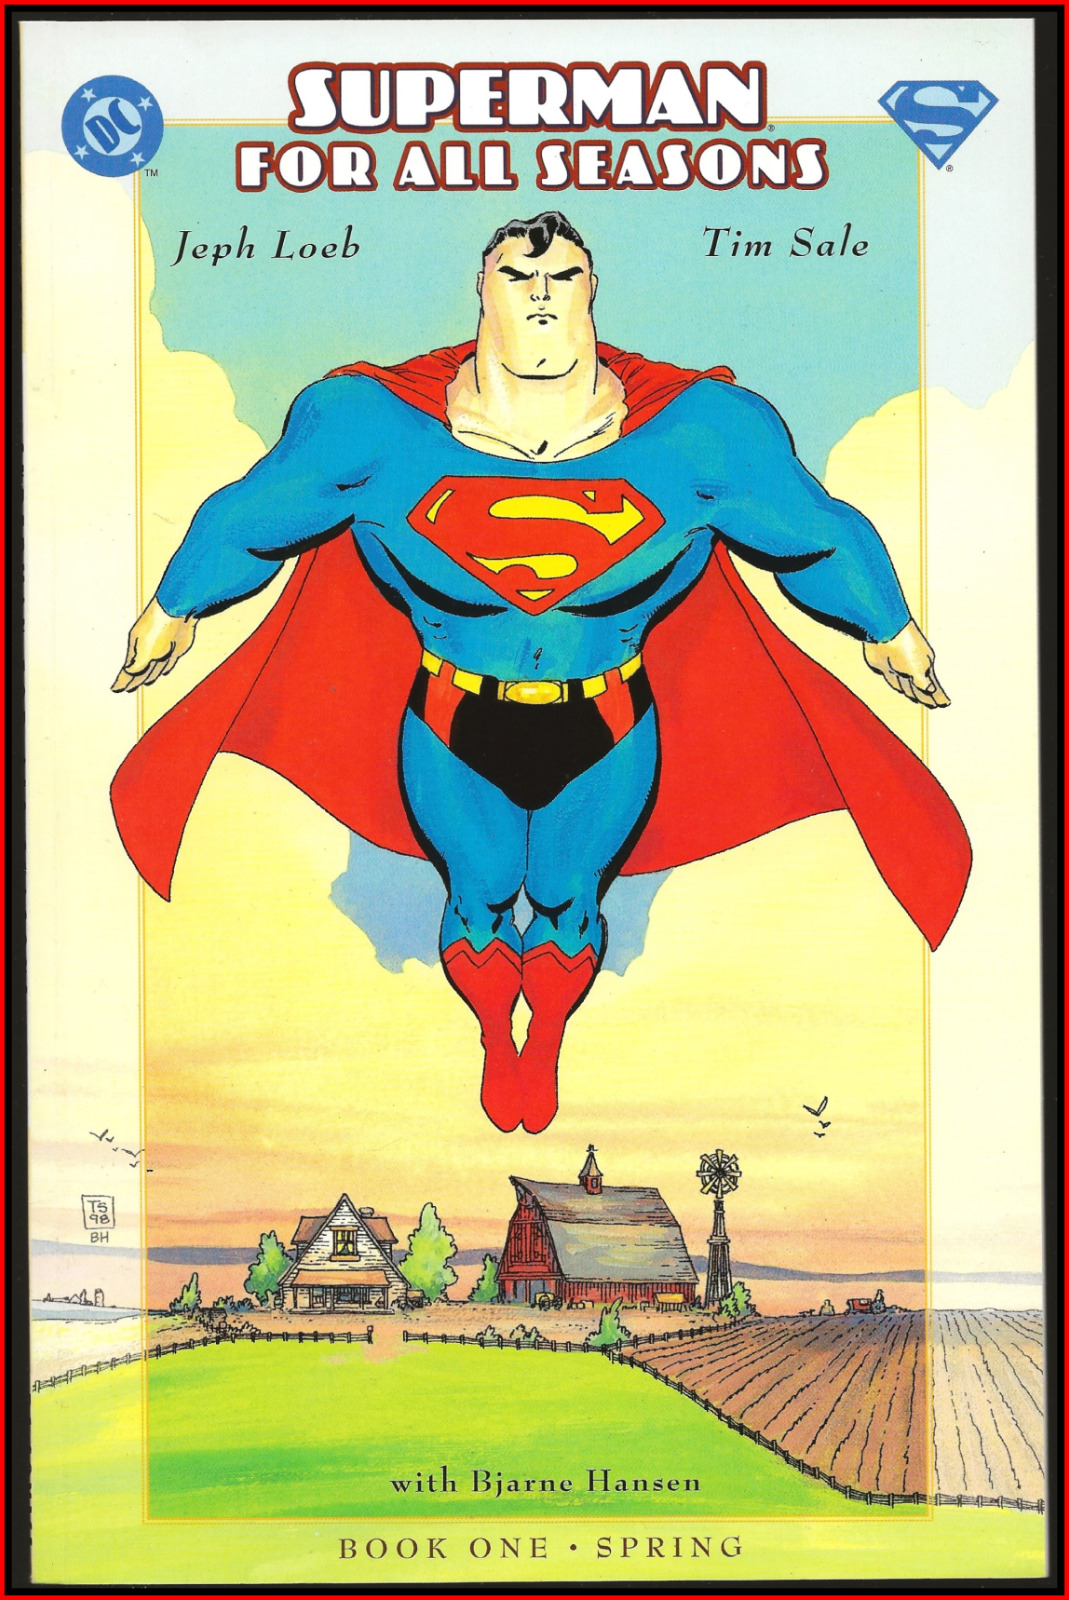 SUPERMAN FOR ALL SEASONS #1 (1998) LOEB SALE LEGACY MOVIE KEY JAMES GUNN DC NM